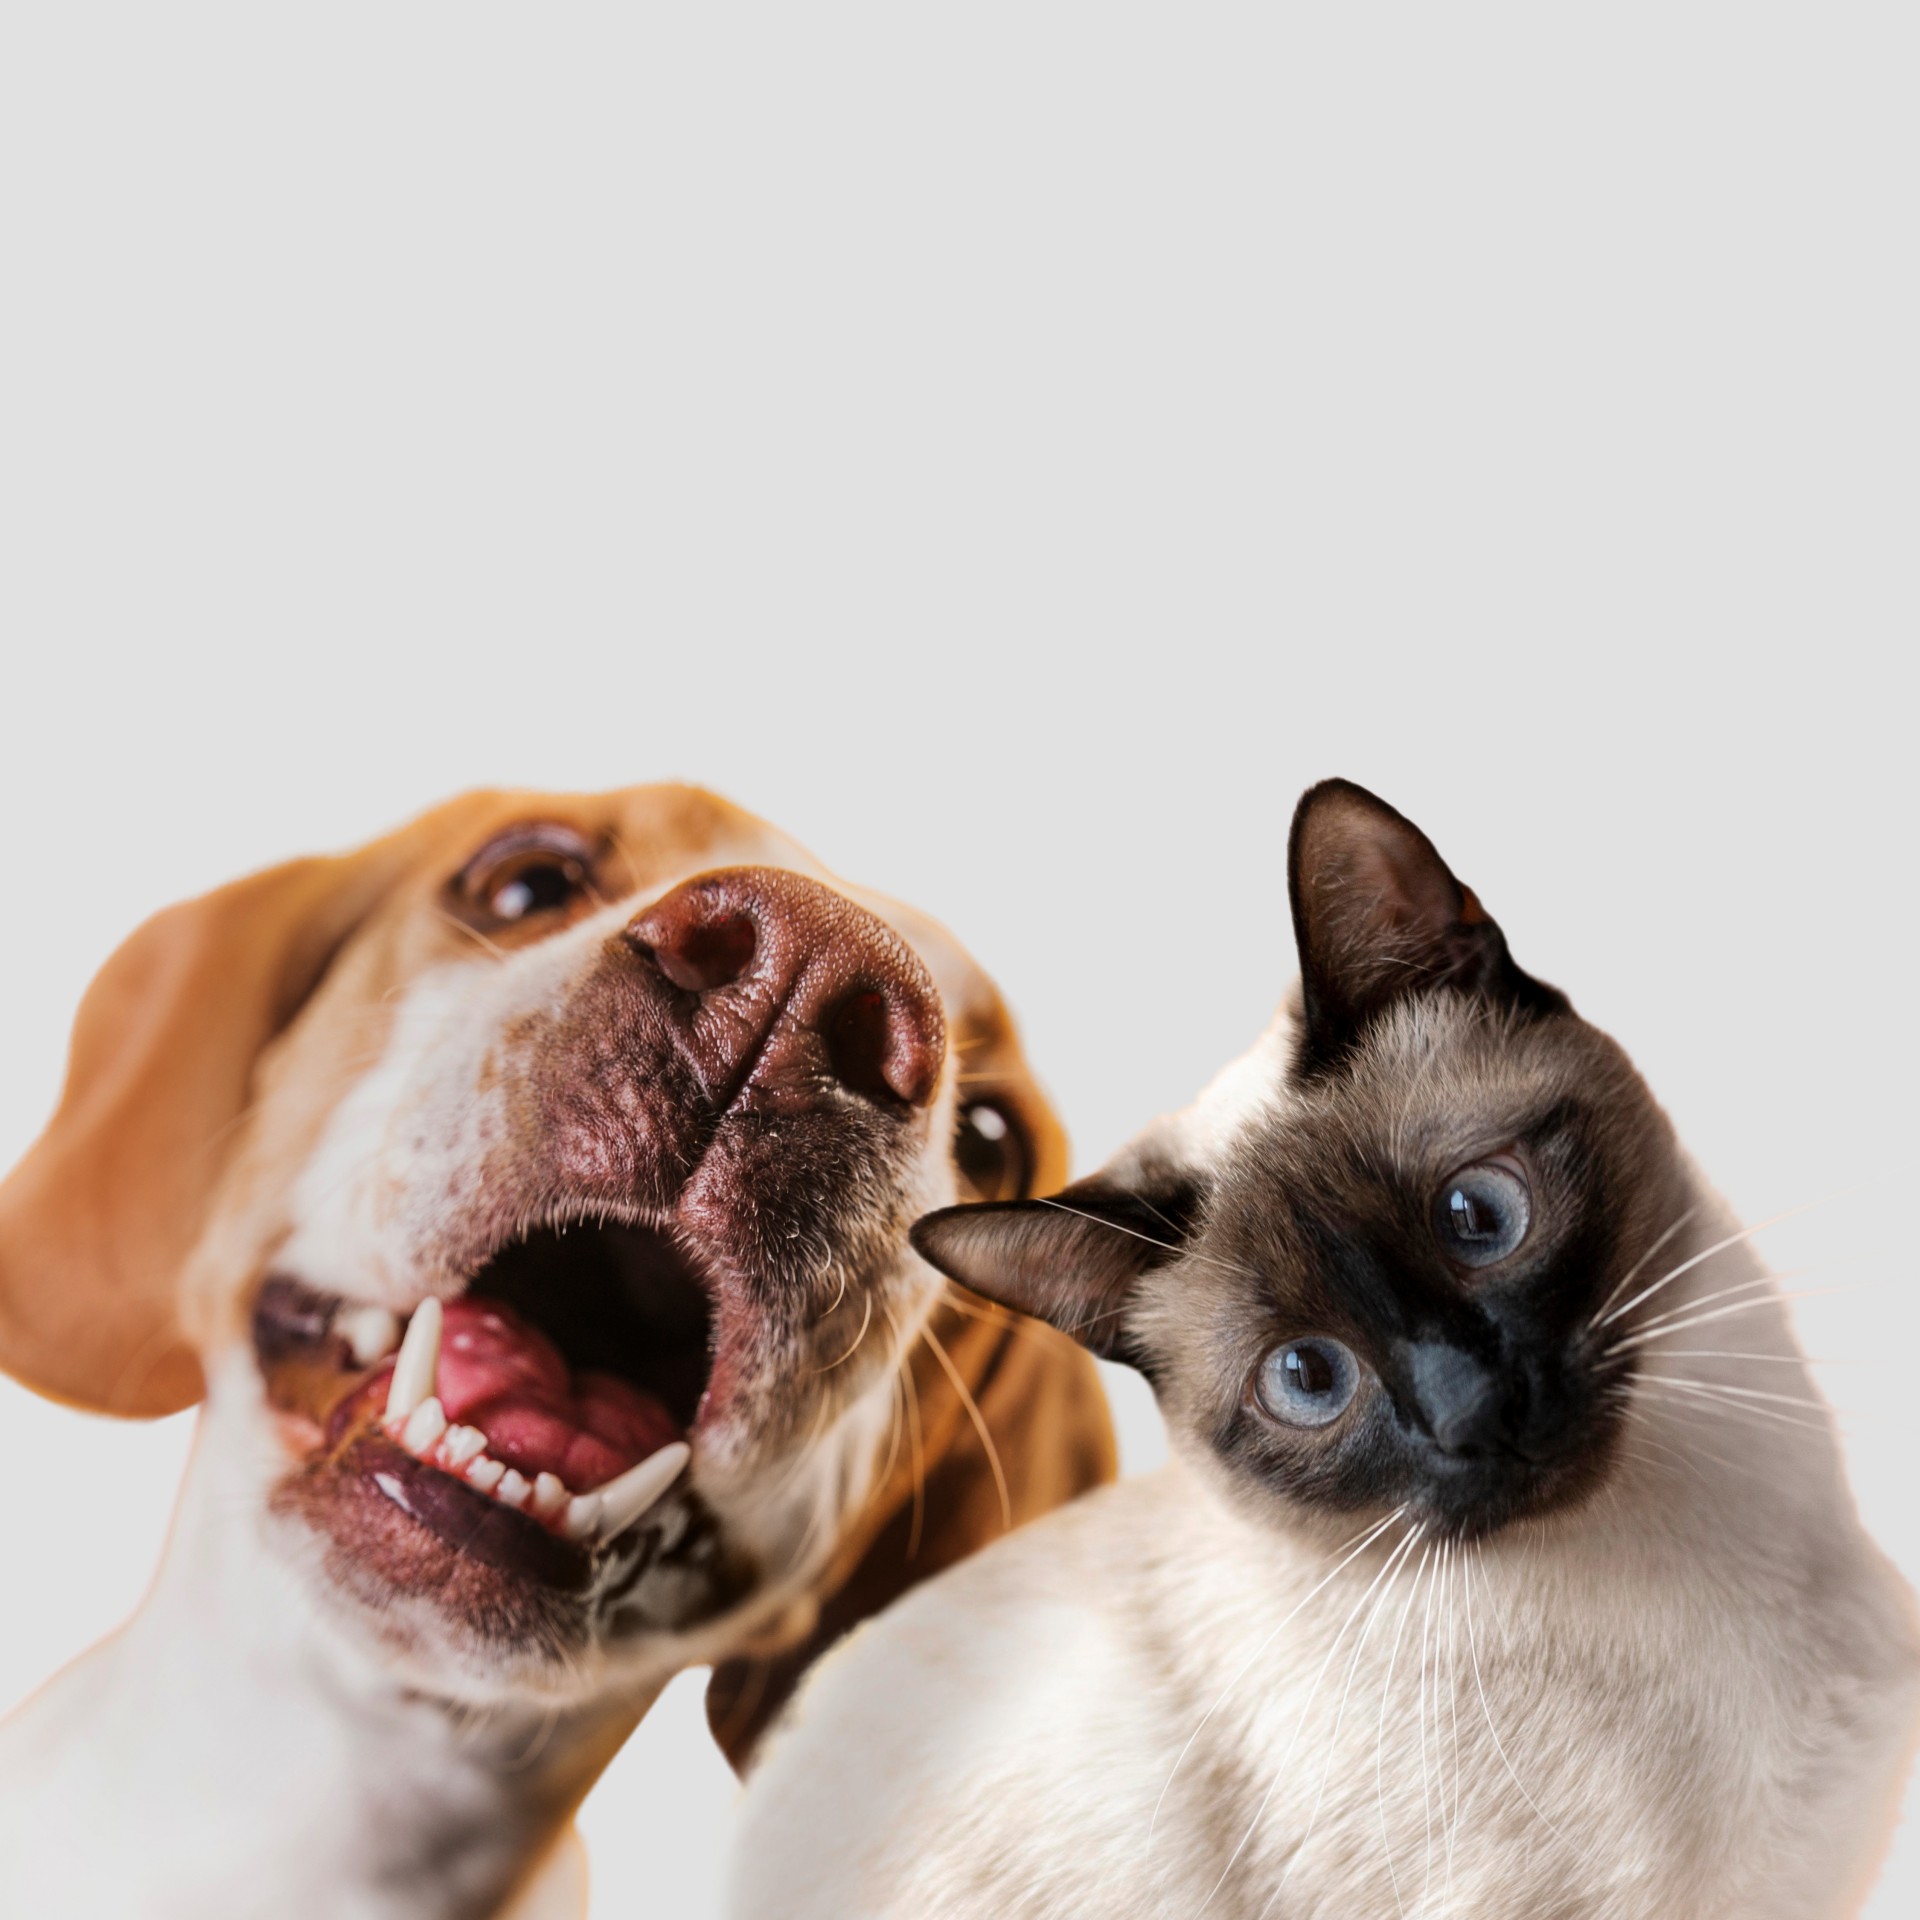 Cães e gatos devem ser registrados obrigatoriamente em Goiás